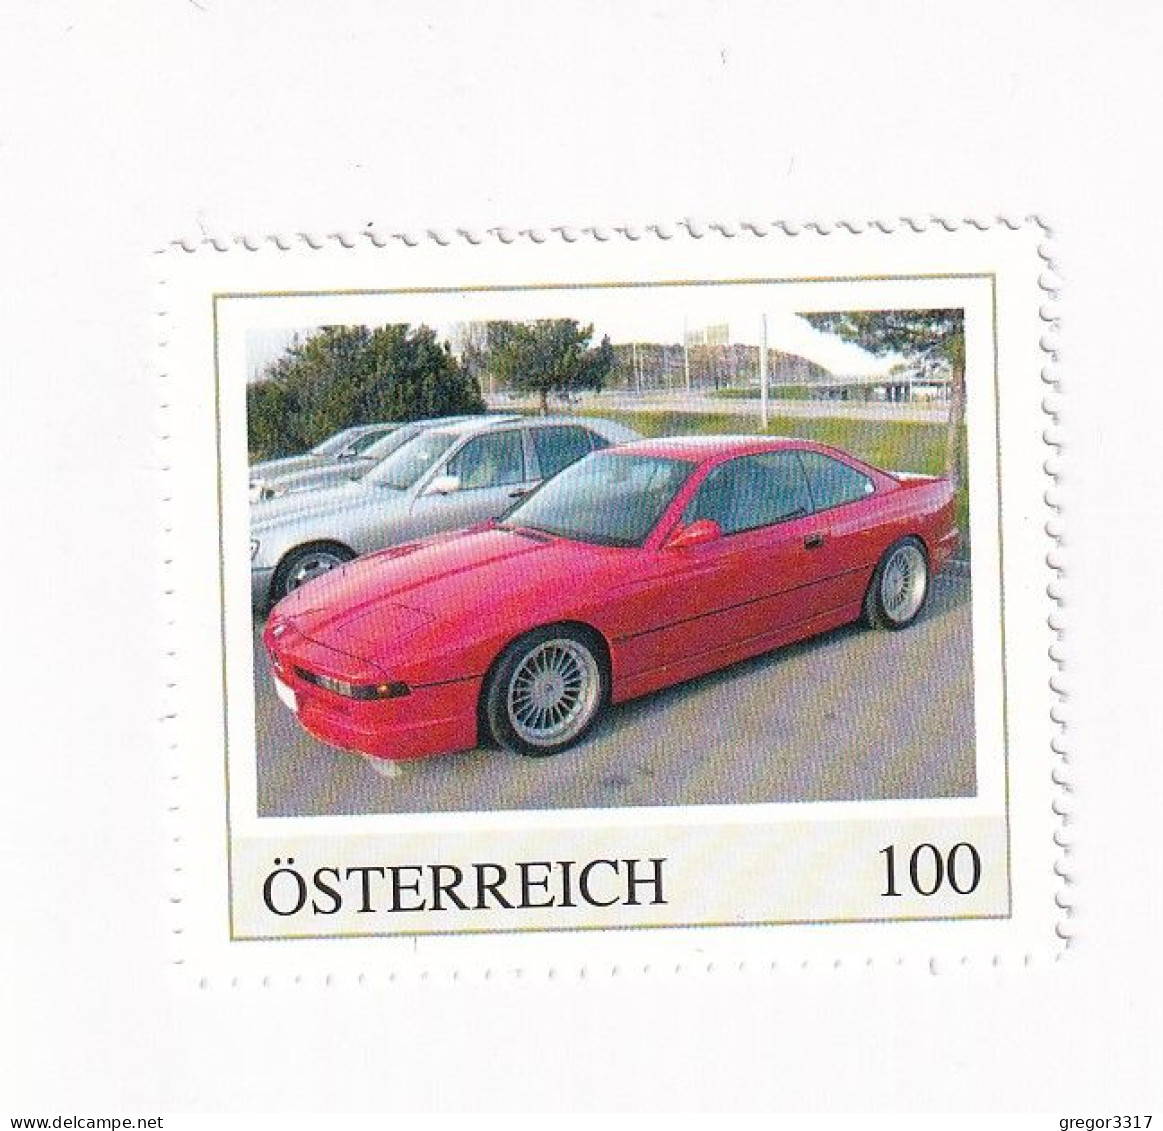 ÖSTERREICH - AUTO -  AUTOMOBILE Im Lauf Der ZEIT - BMW 850i  - Personalisierte Briefmarke ** Postfrisch - Persoonlijke Postzegels